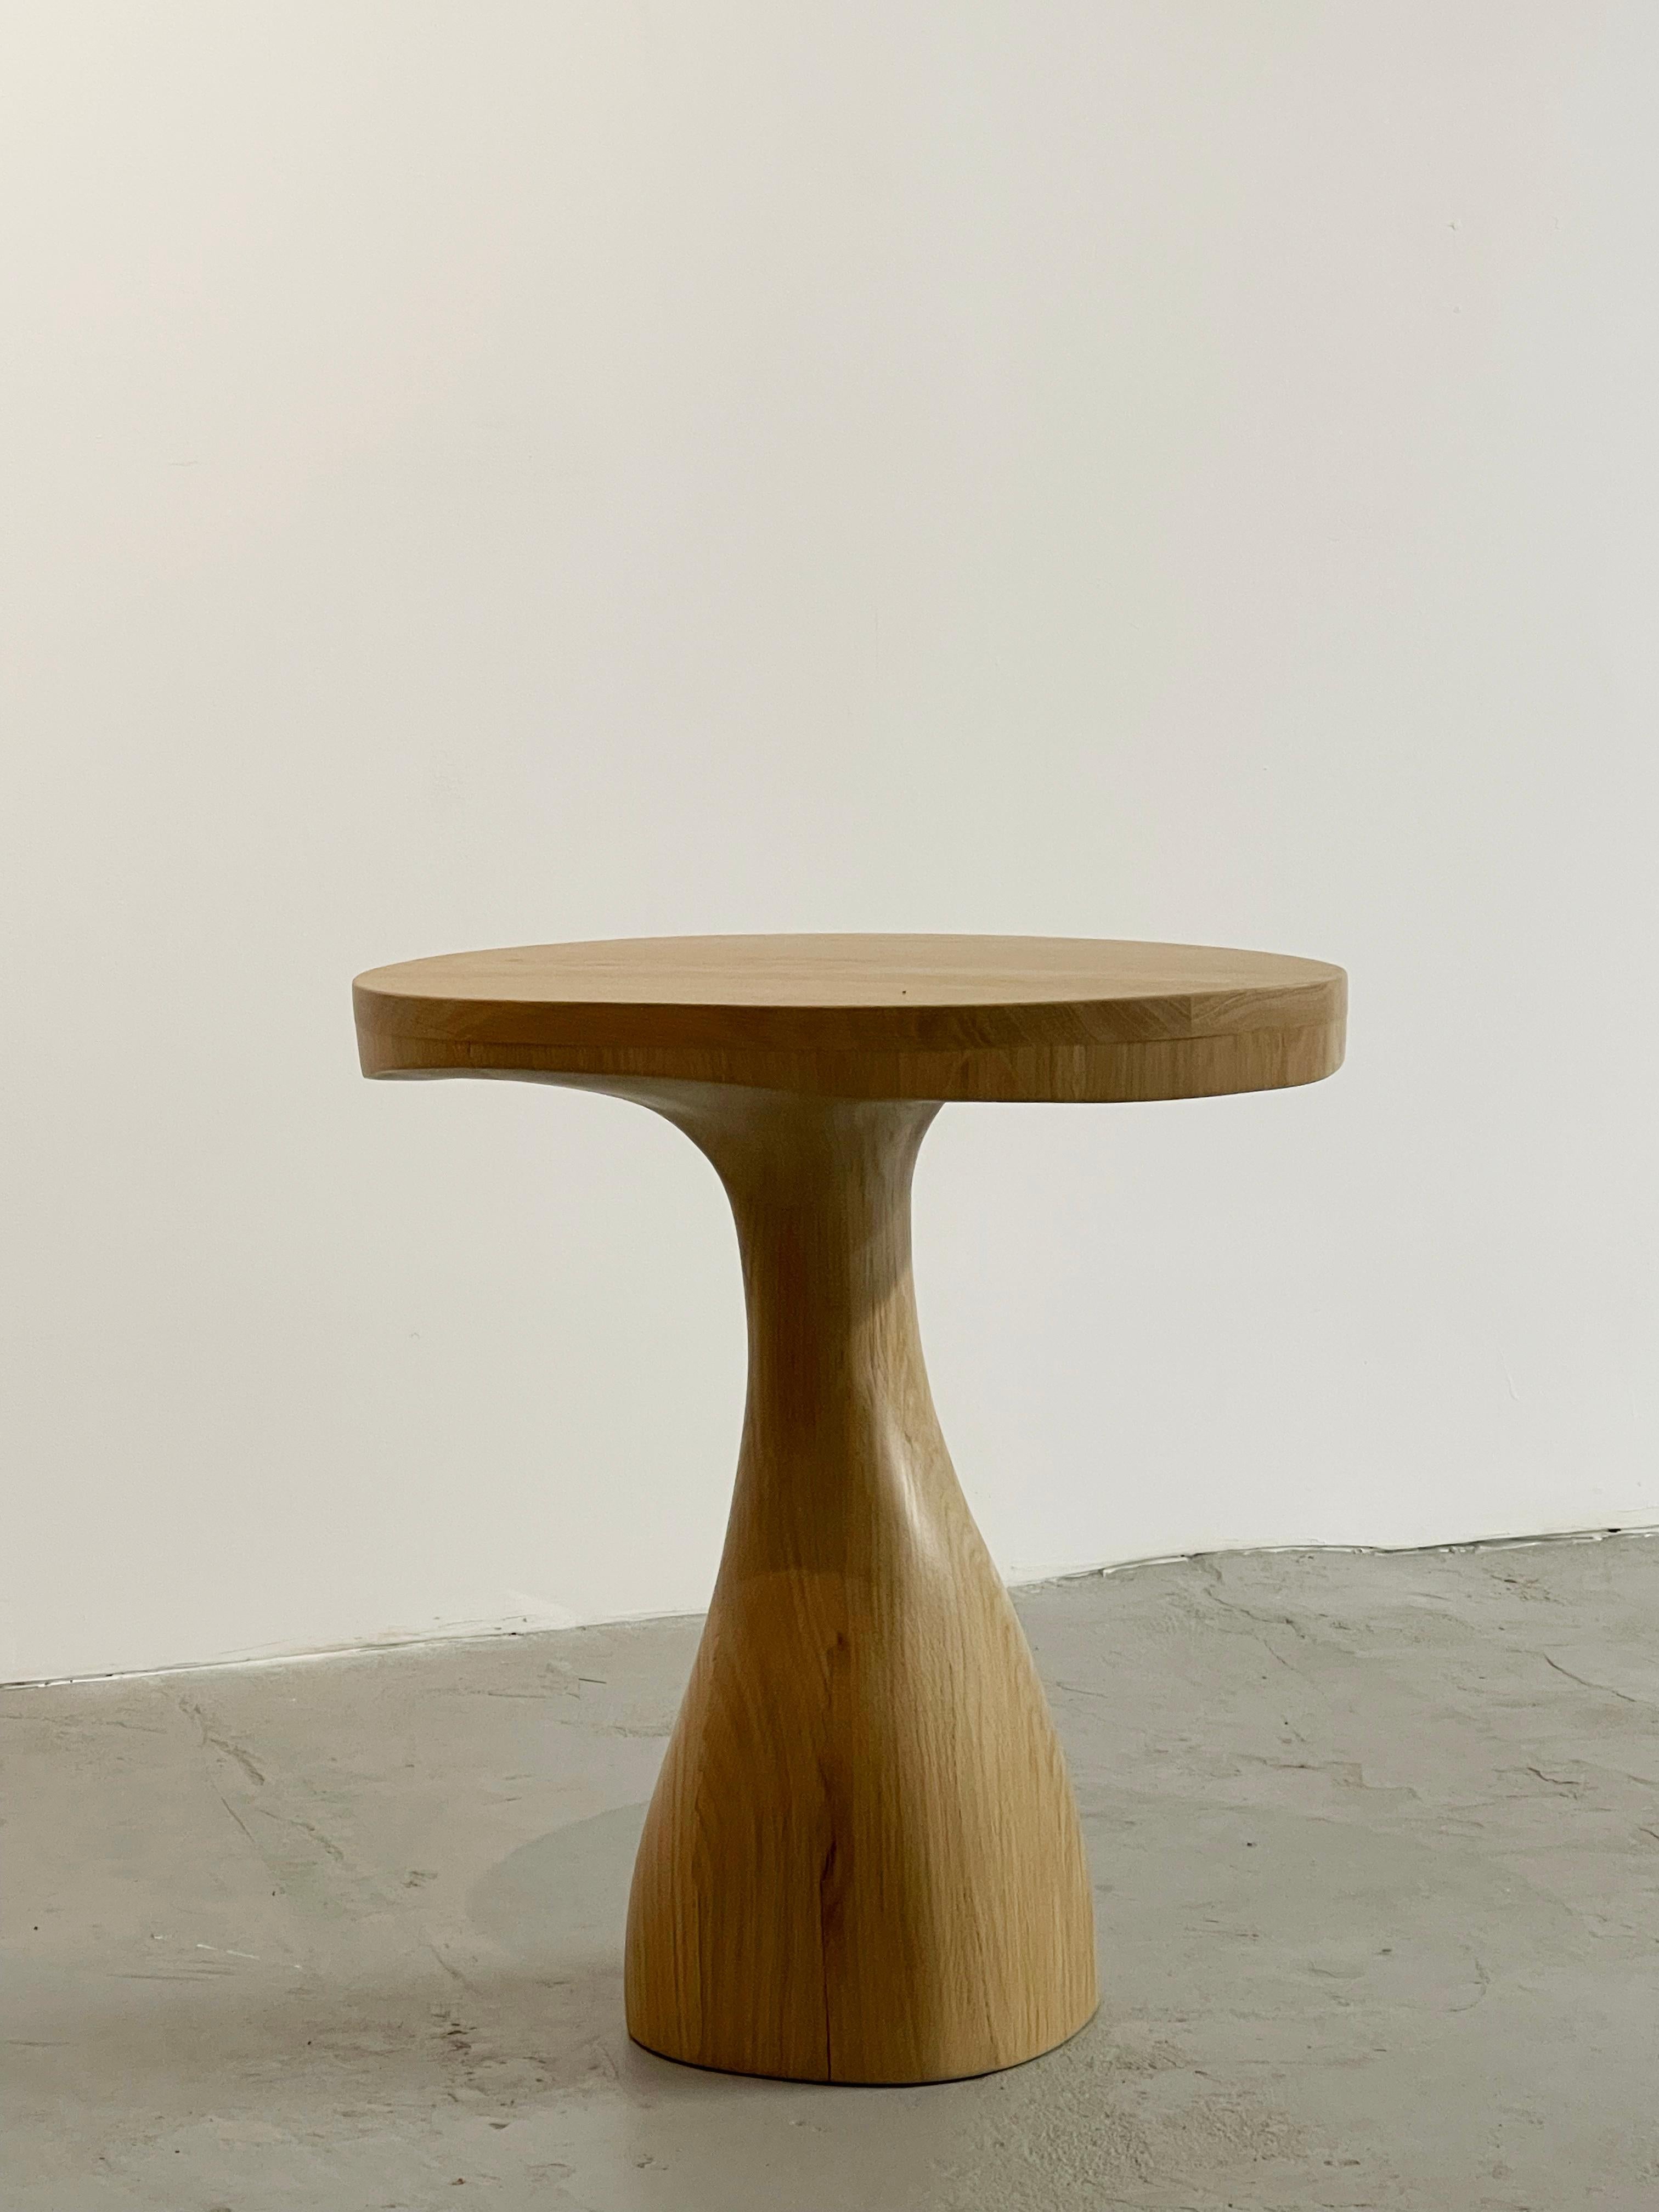 Jacques Icone s'inspire de son iconique lampadaire Leda pour créer cette table d'appoint sculptée intemporelle en chêne naturel massif. Le plateau de forme organique prolonge le pied central en forme de tige.

La sculpture semble en mouvement car le